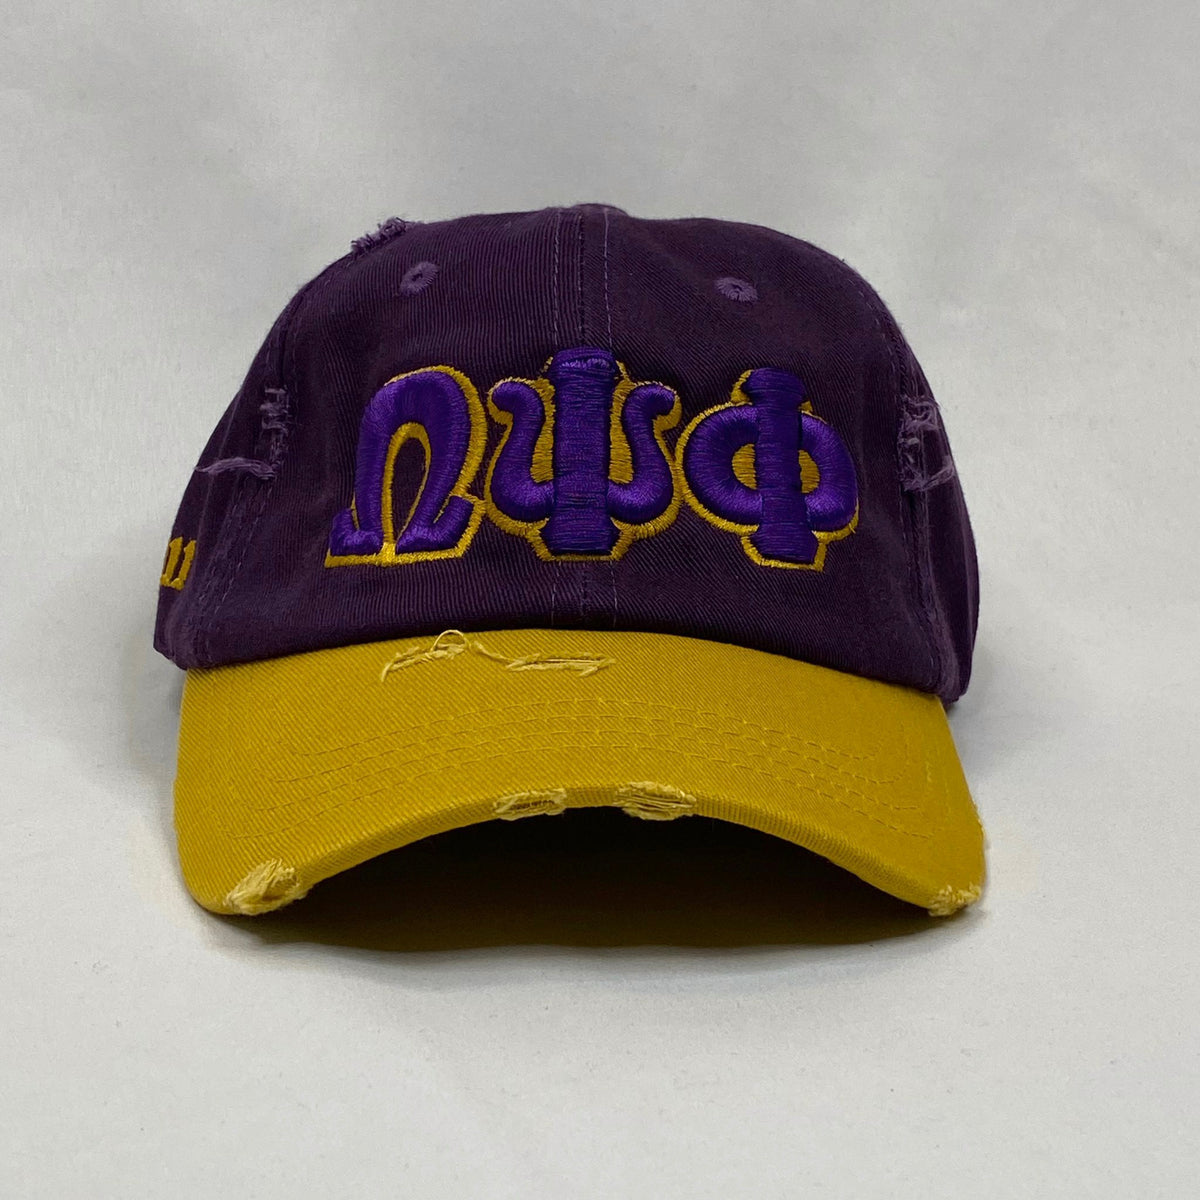 “ΩΨΦ” Omega Psi Phi Purple & Old Gold distressed hat